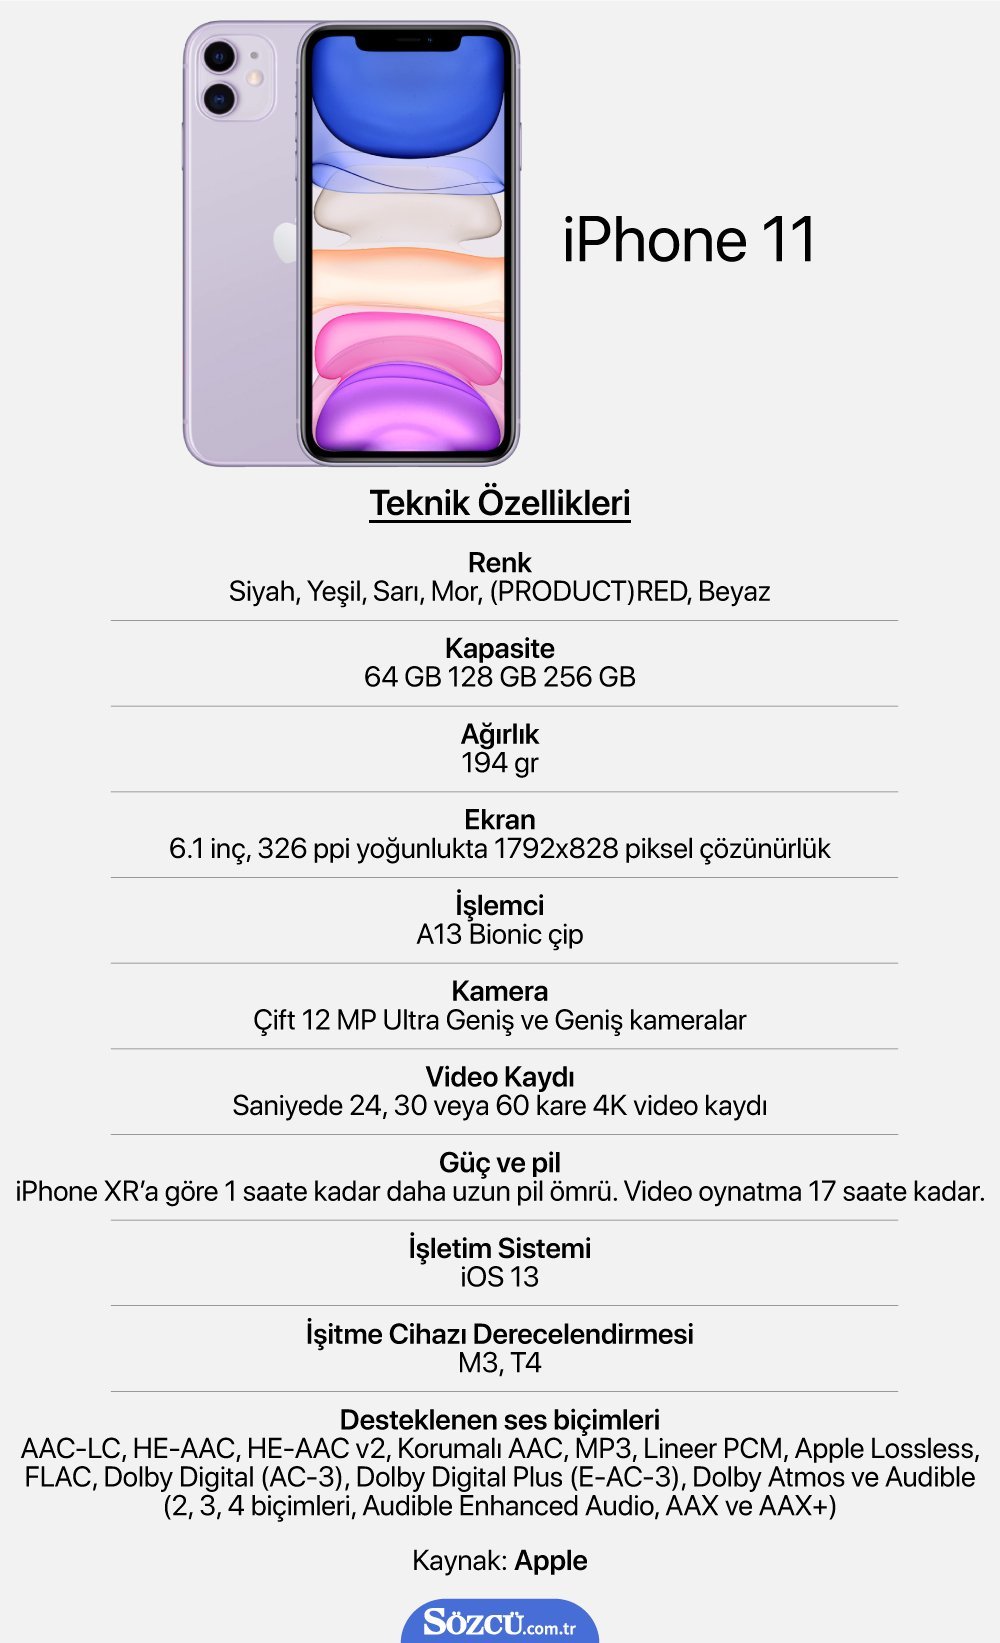 Айфон 11 про герцы. Айфон 11 параметры в см. Iphone 11 Pro габариты. Характеристики экрана айфон 11. Iphone 11 экран характеристики.